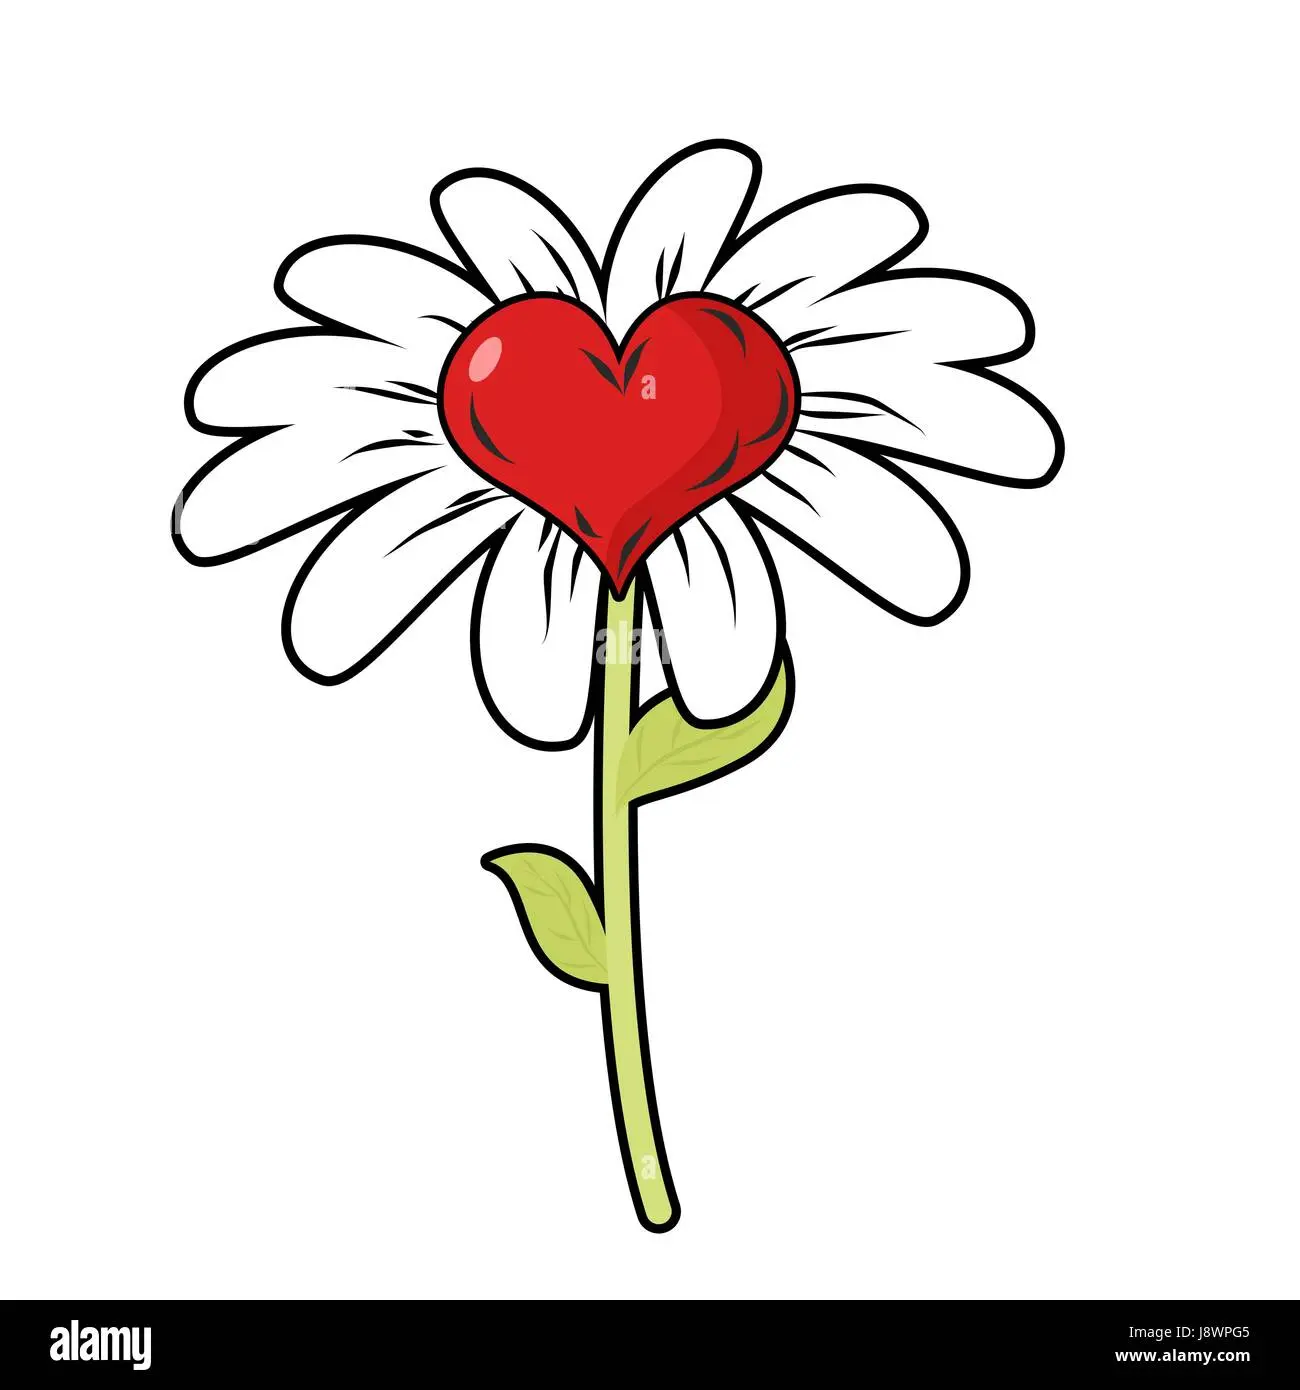 corazon y una flor - Qué son los corazones en flor